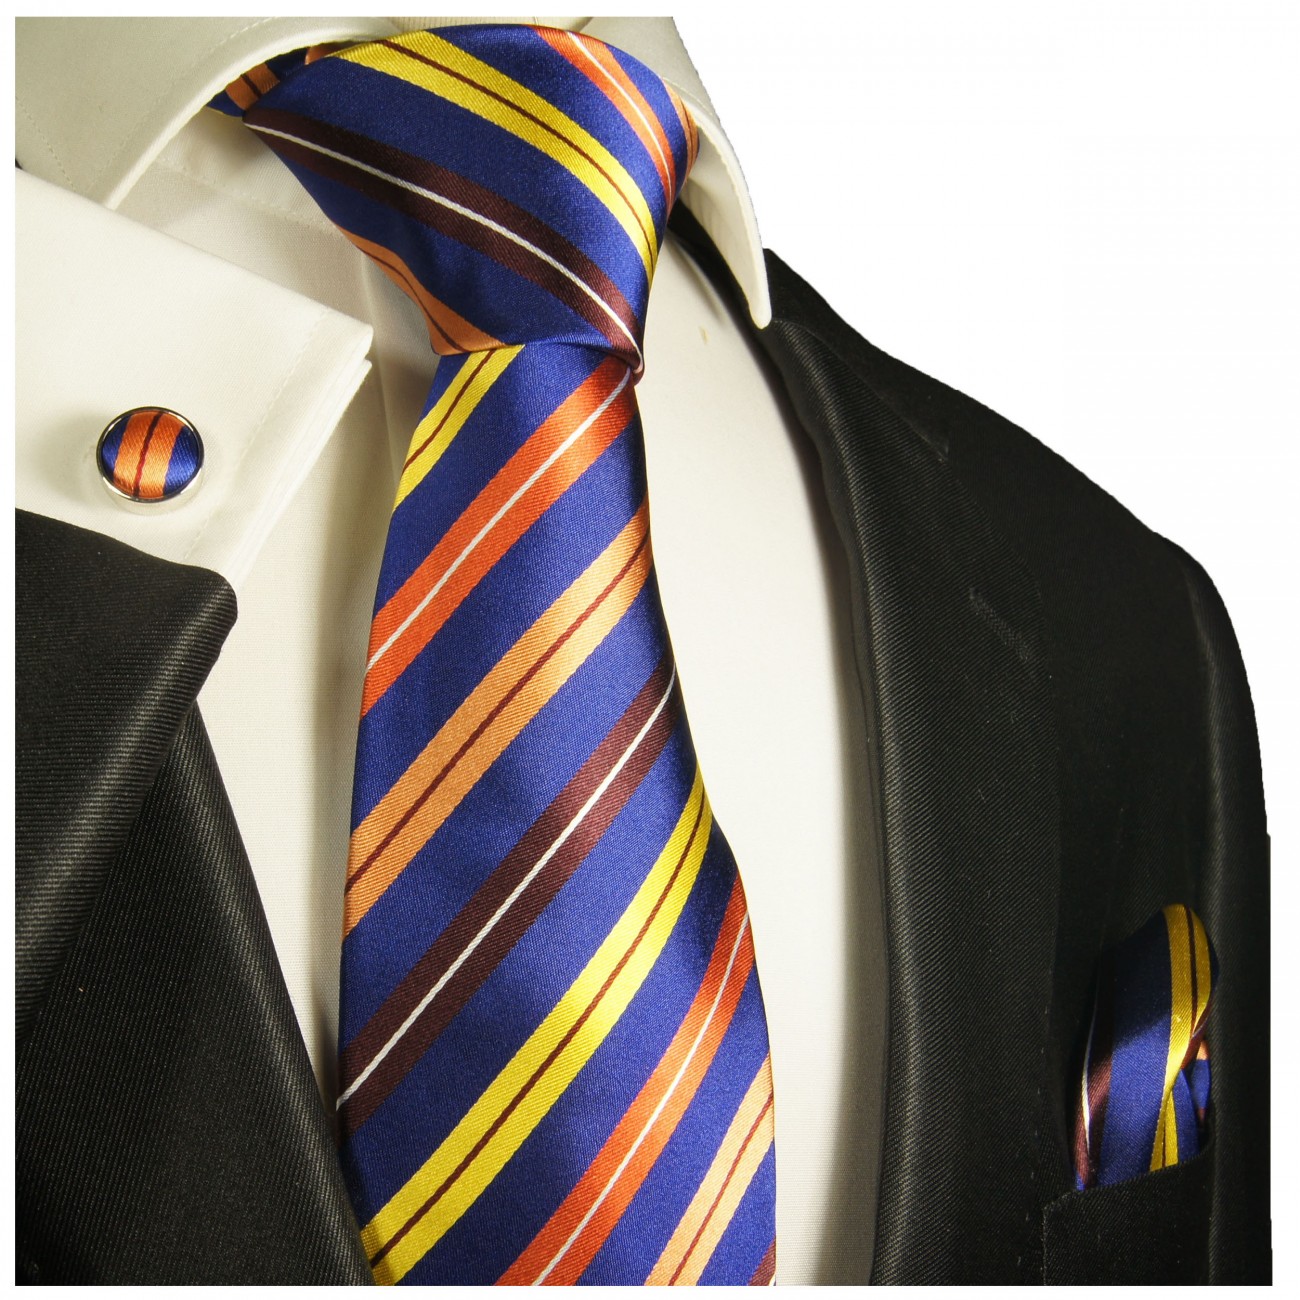 Krawatte blau gelb orange gestreift mit Einstecktuch und Manschettenknöpfen 332